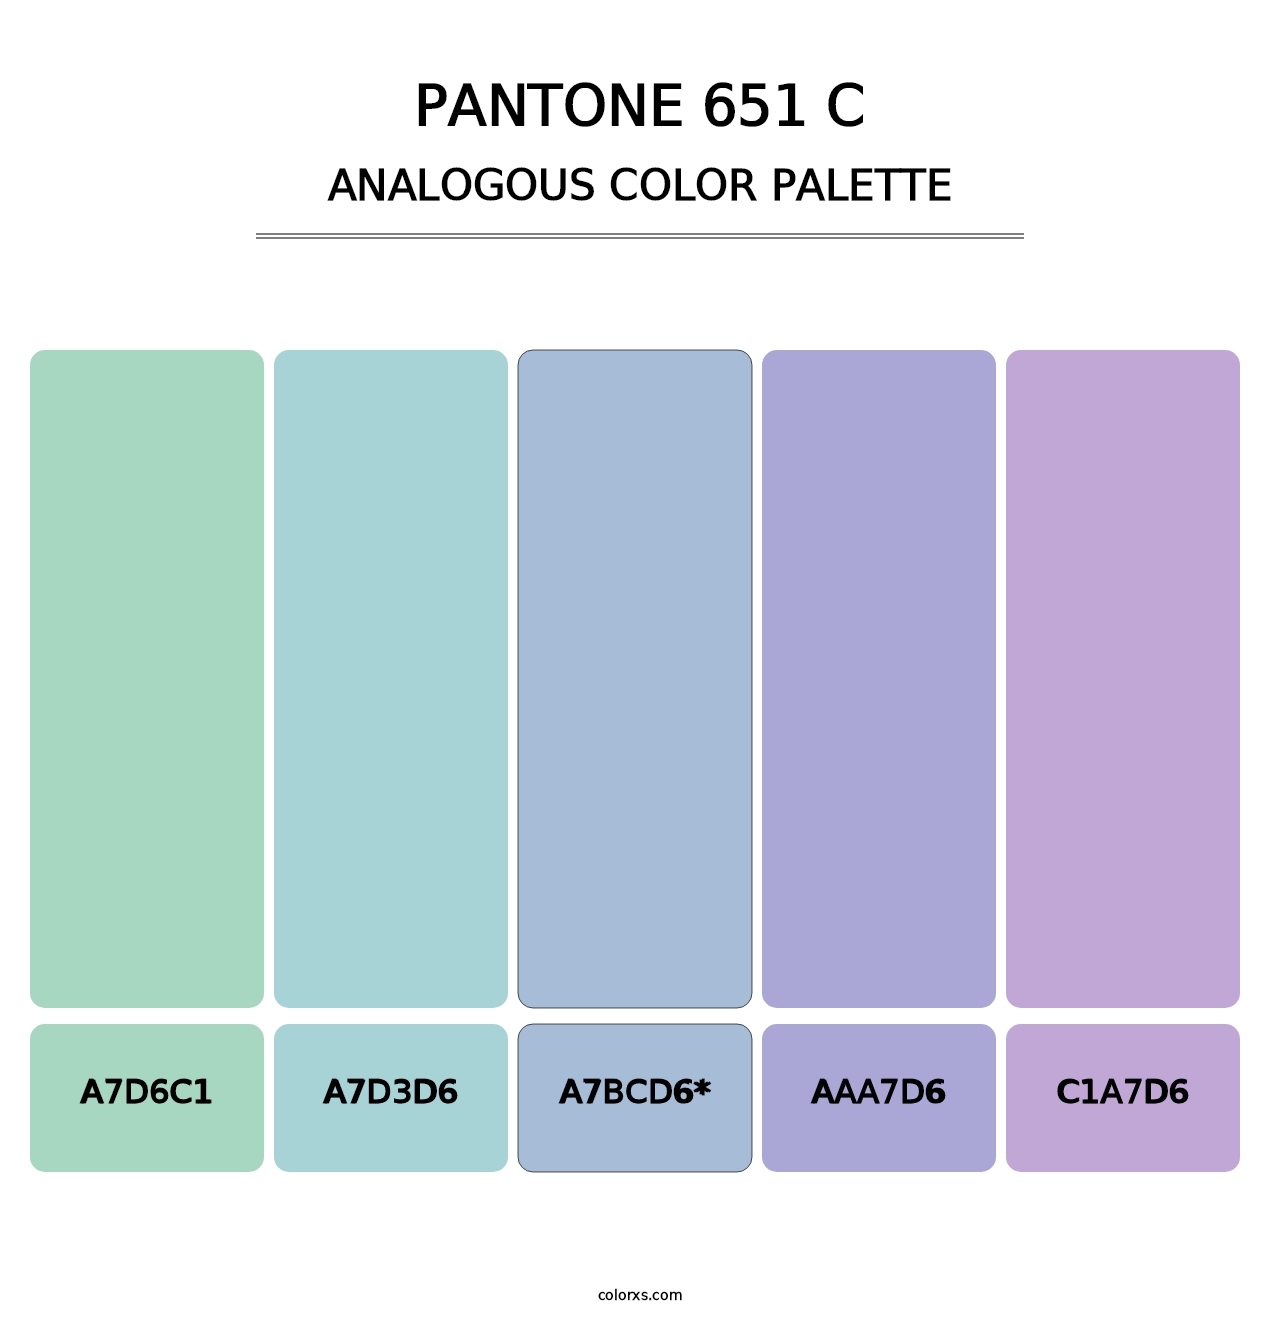 PANTONE 651 C - Analogous Color Palette